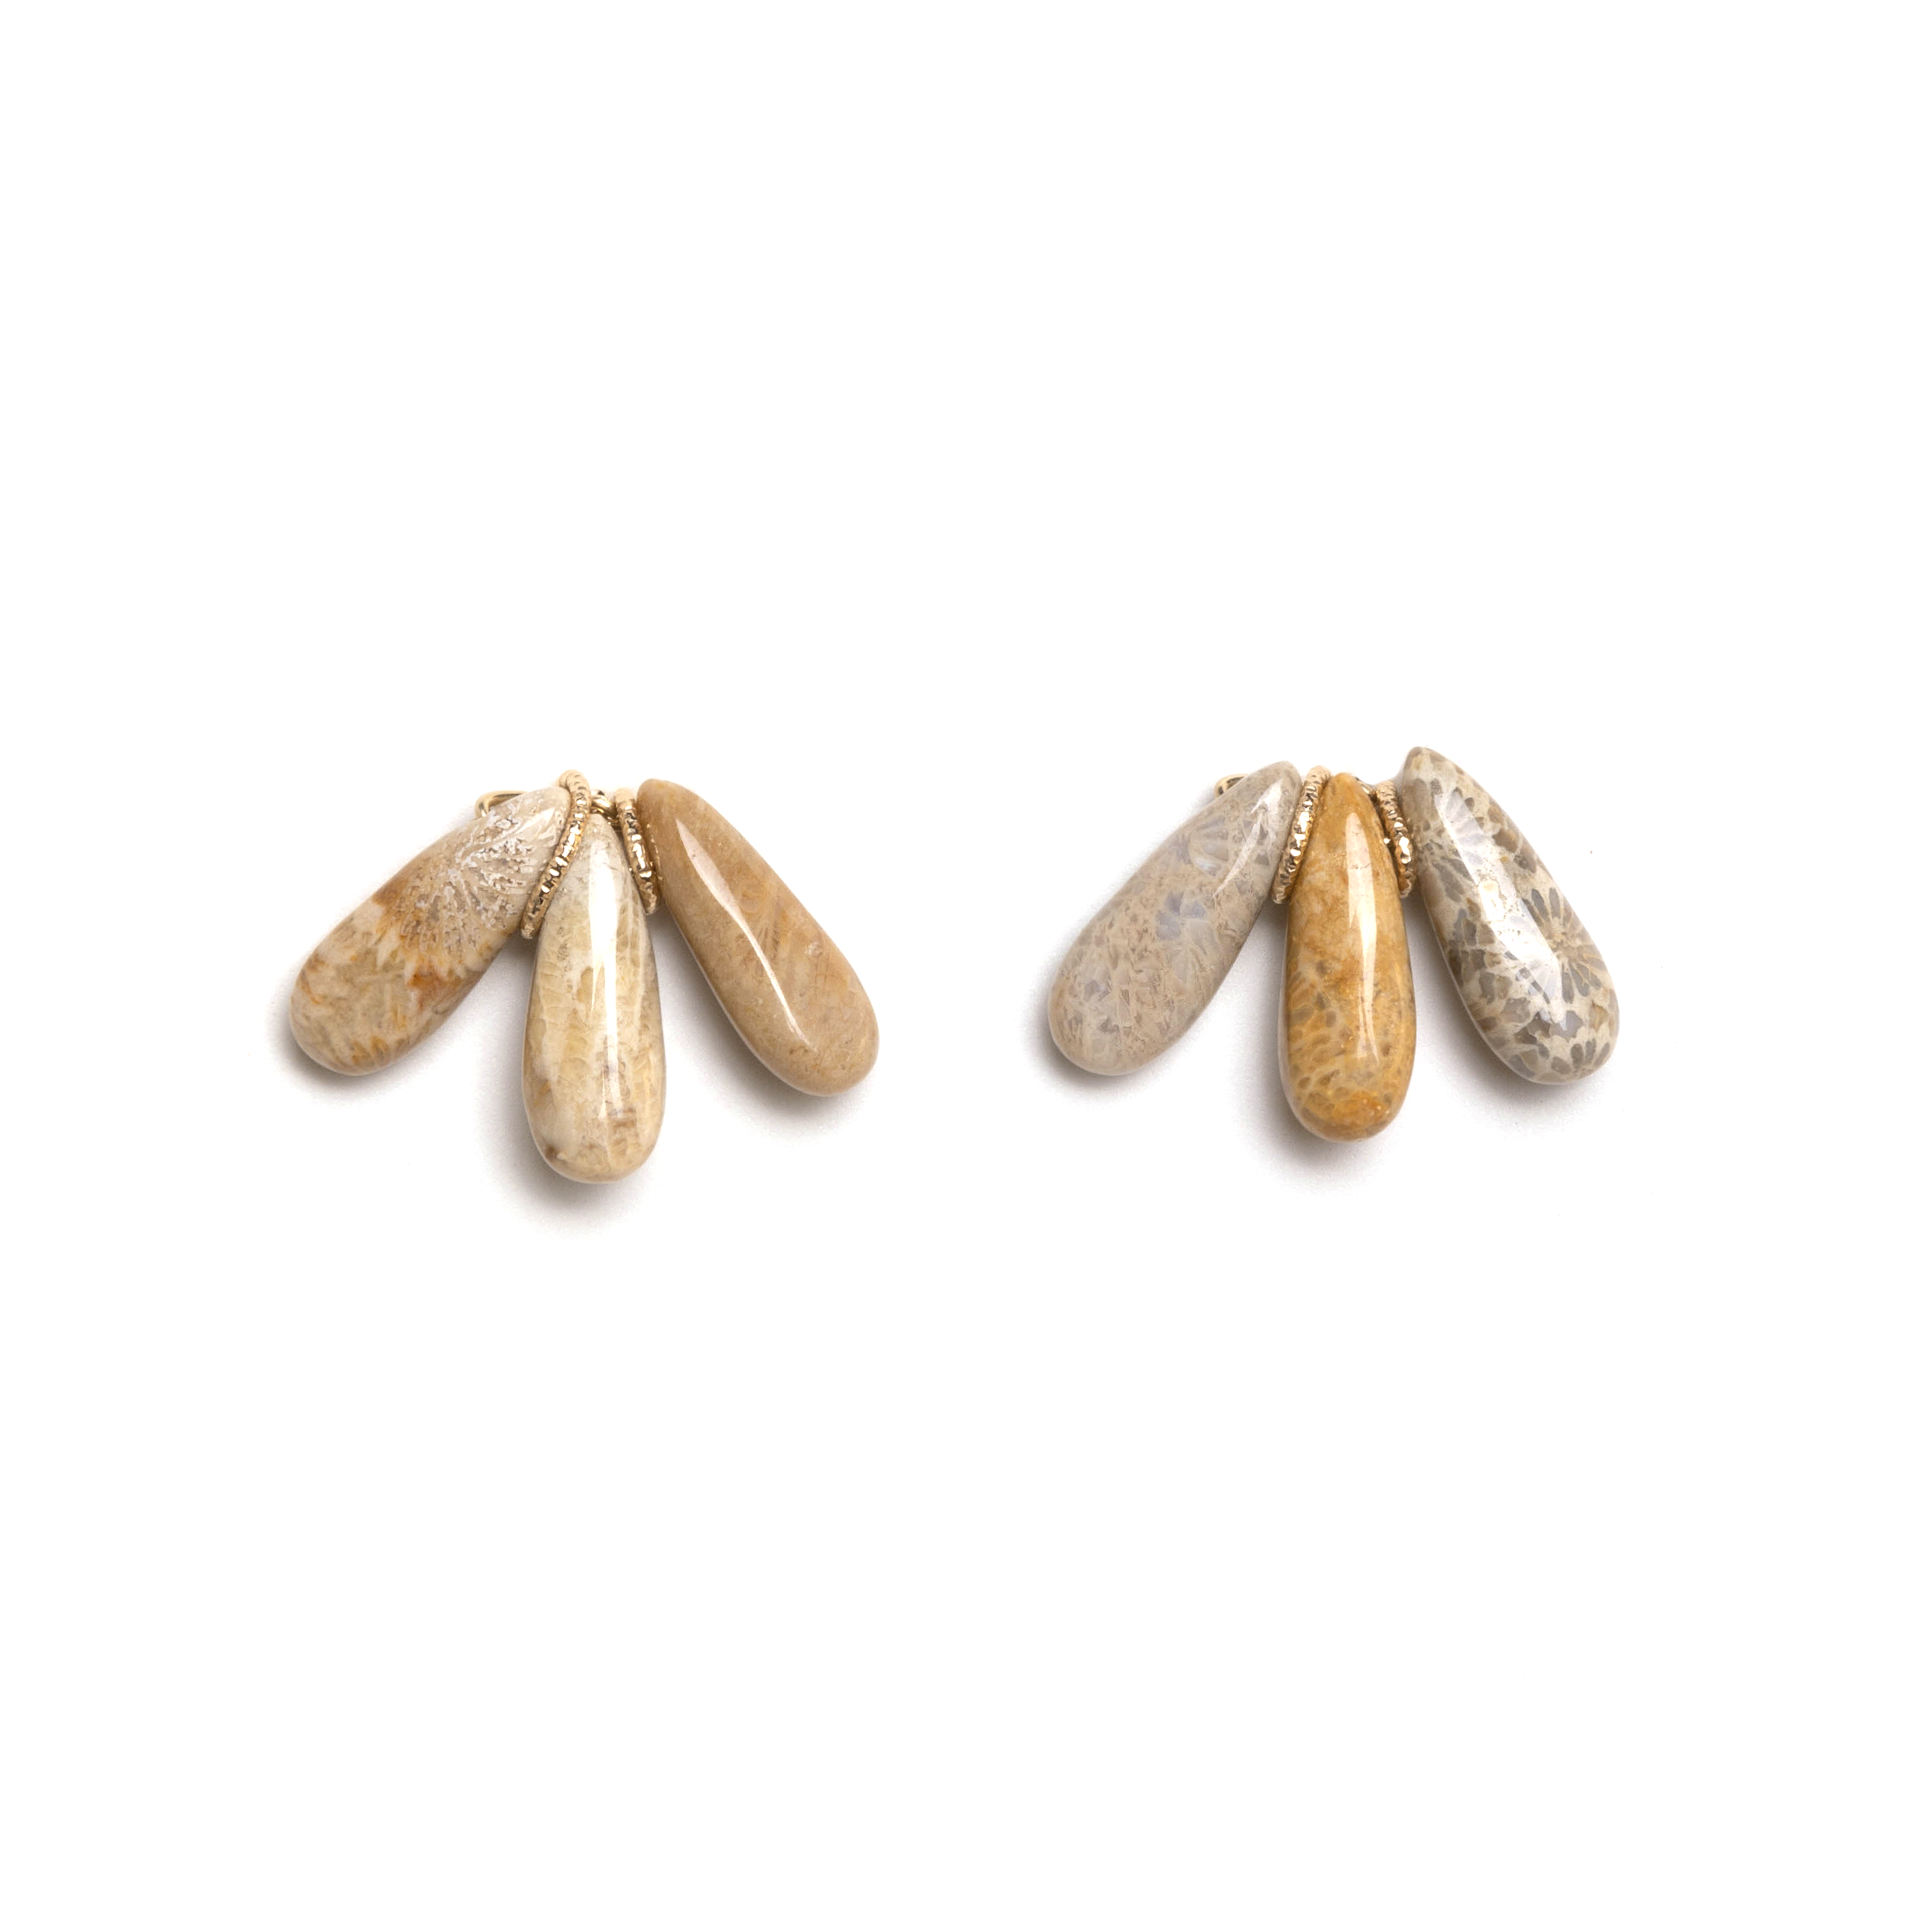 Petra Dangle Earrings (20mm) - Fossil Jasper & Petoskey Stone Earrings TARBAY   